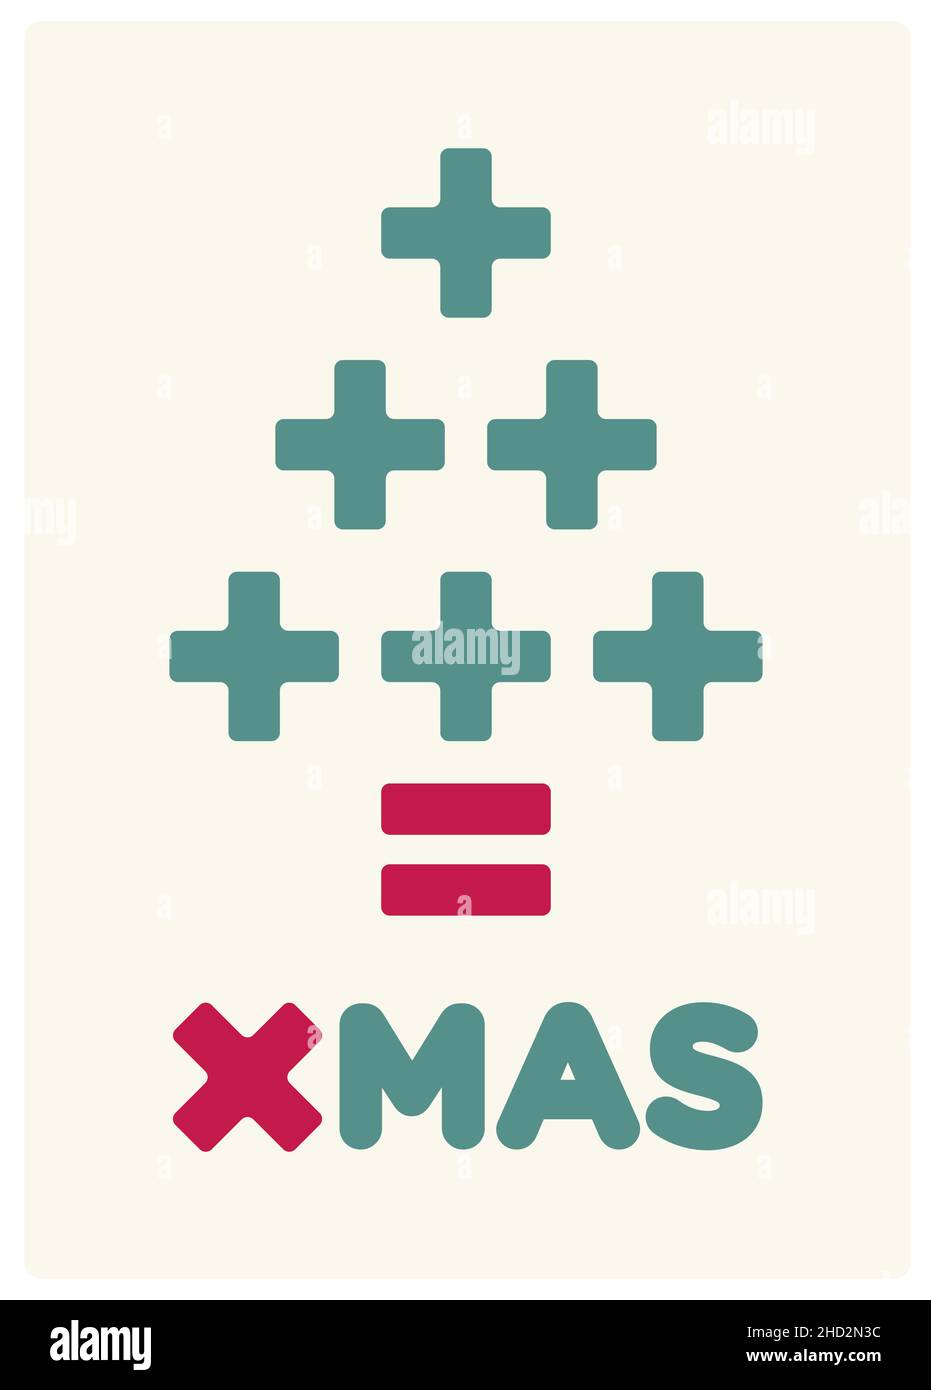 crítica matemática y consumerismo tarjeta de navidad, azul-verde y rojo colores texto y fondo blanco - ilustración vectorial Ilustración del Vector